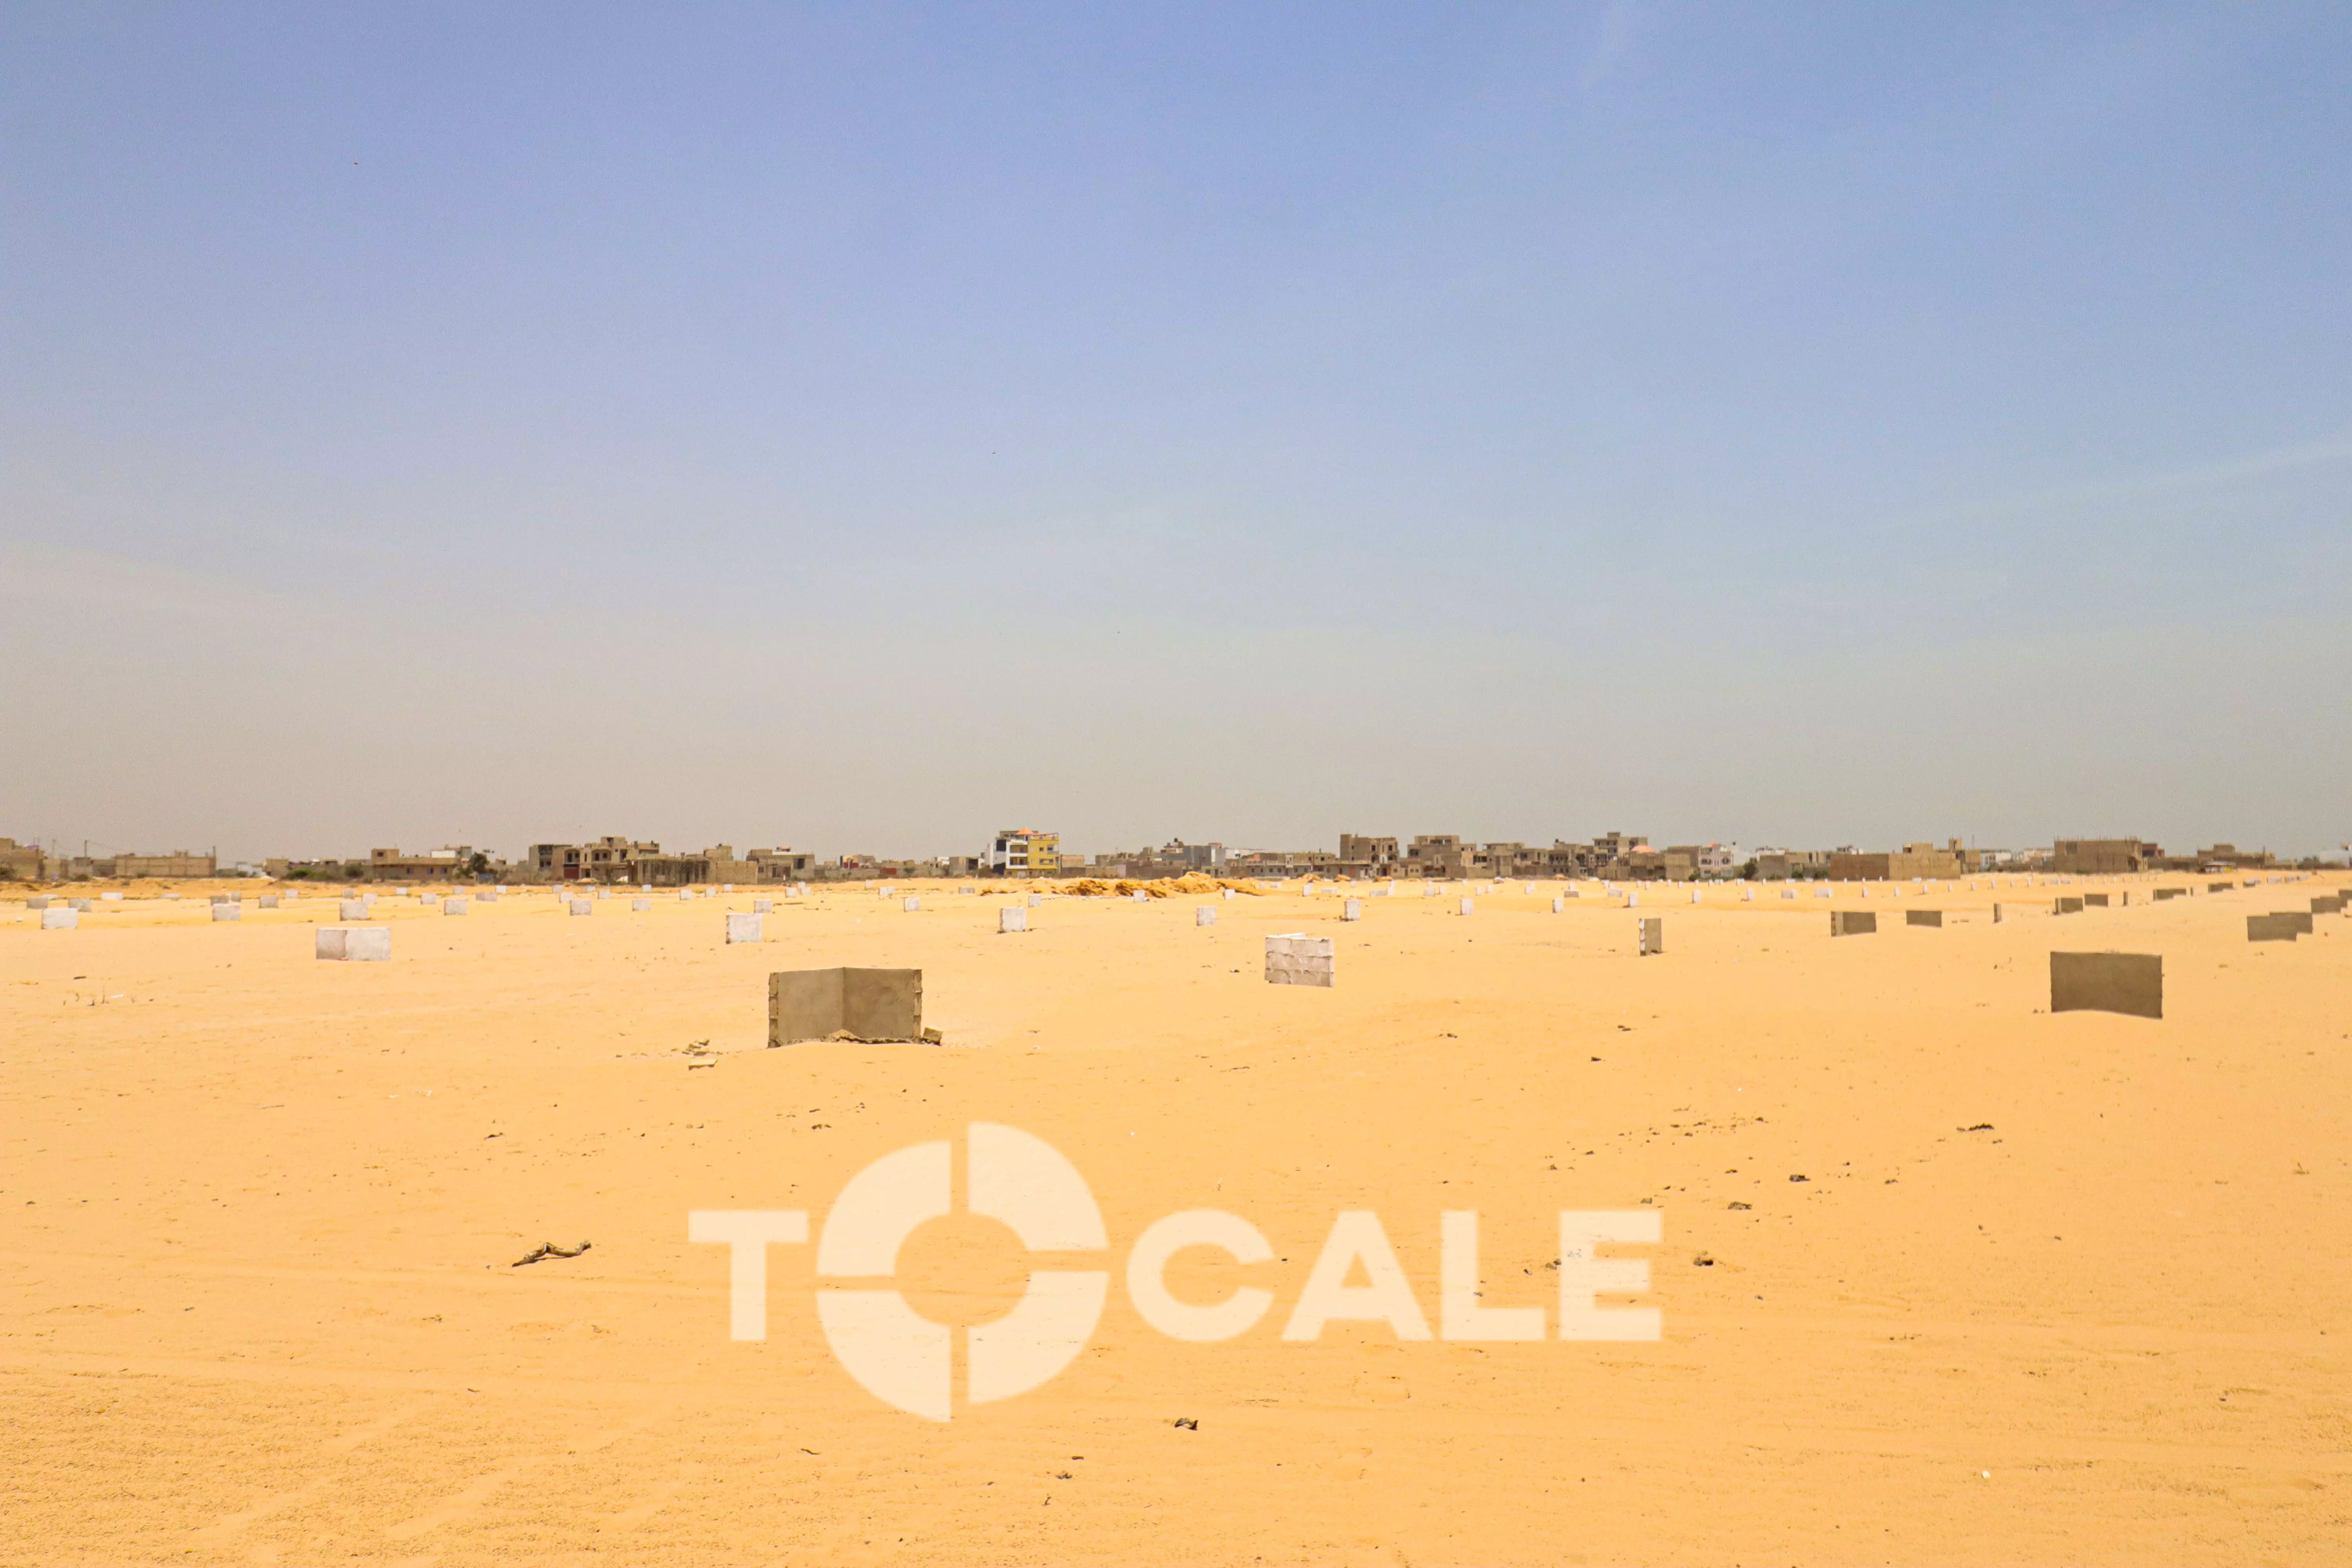 Terrain à vendre à Dakar au Sénégal : immobilier senegal ...